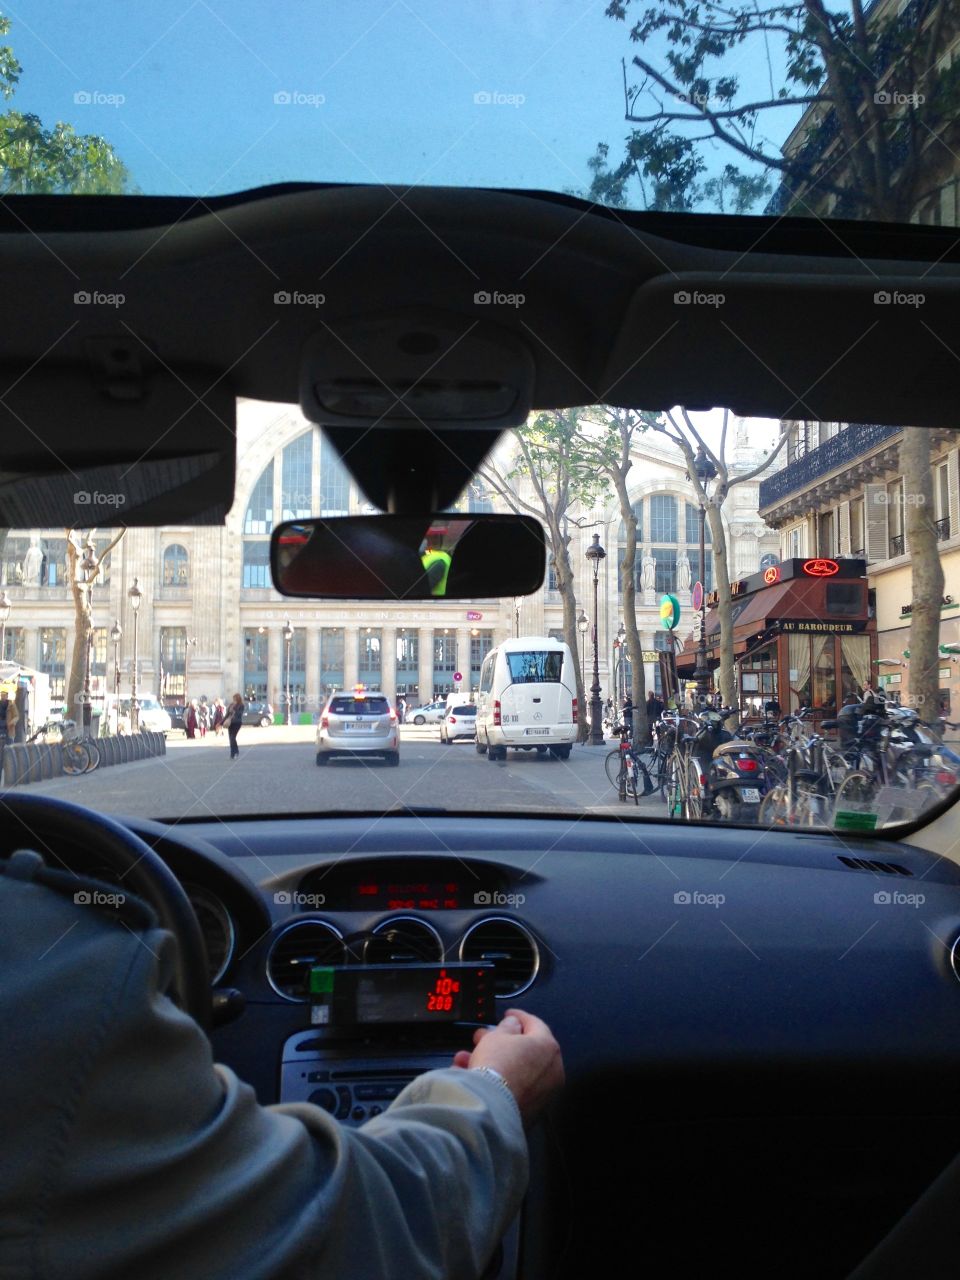 10th Arrondissement . Paris in a Taxi